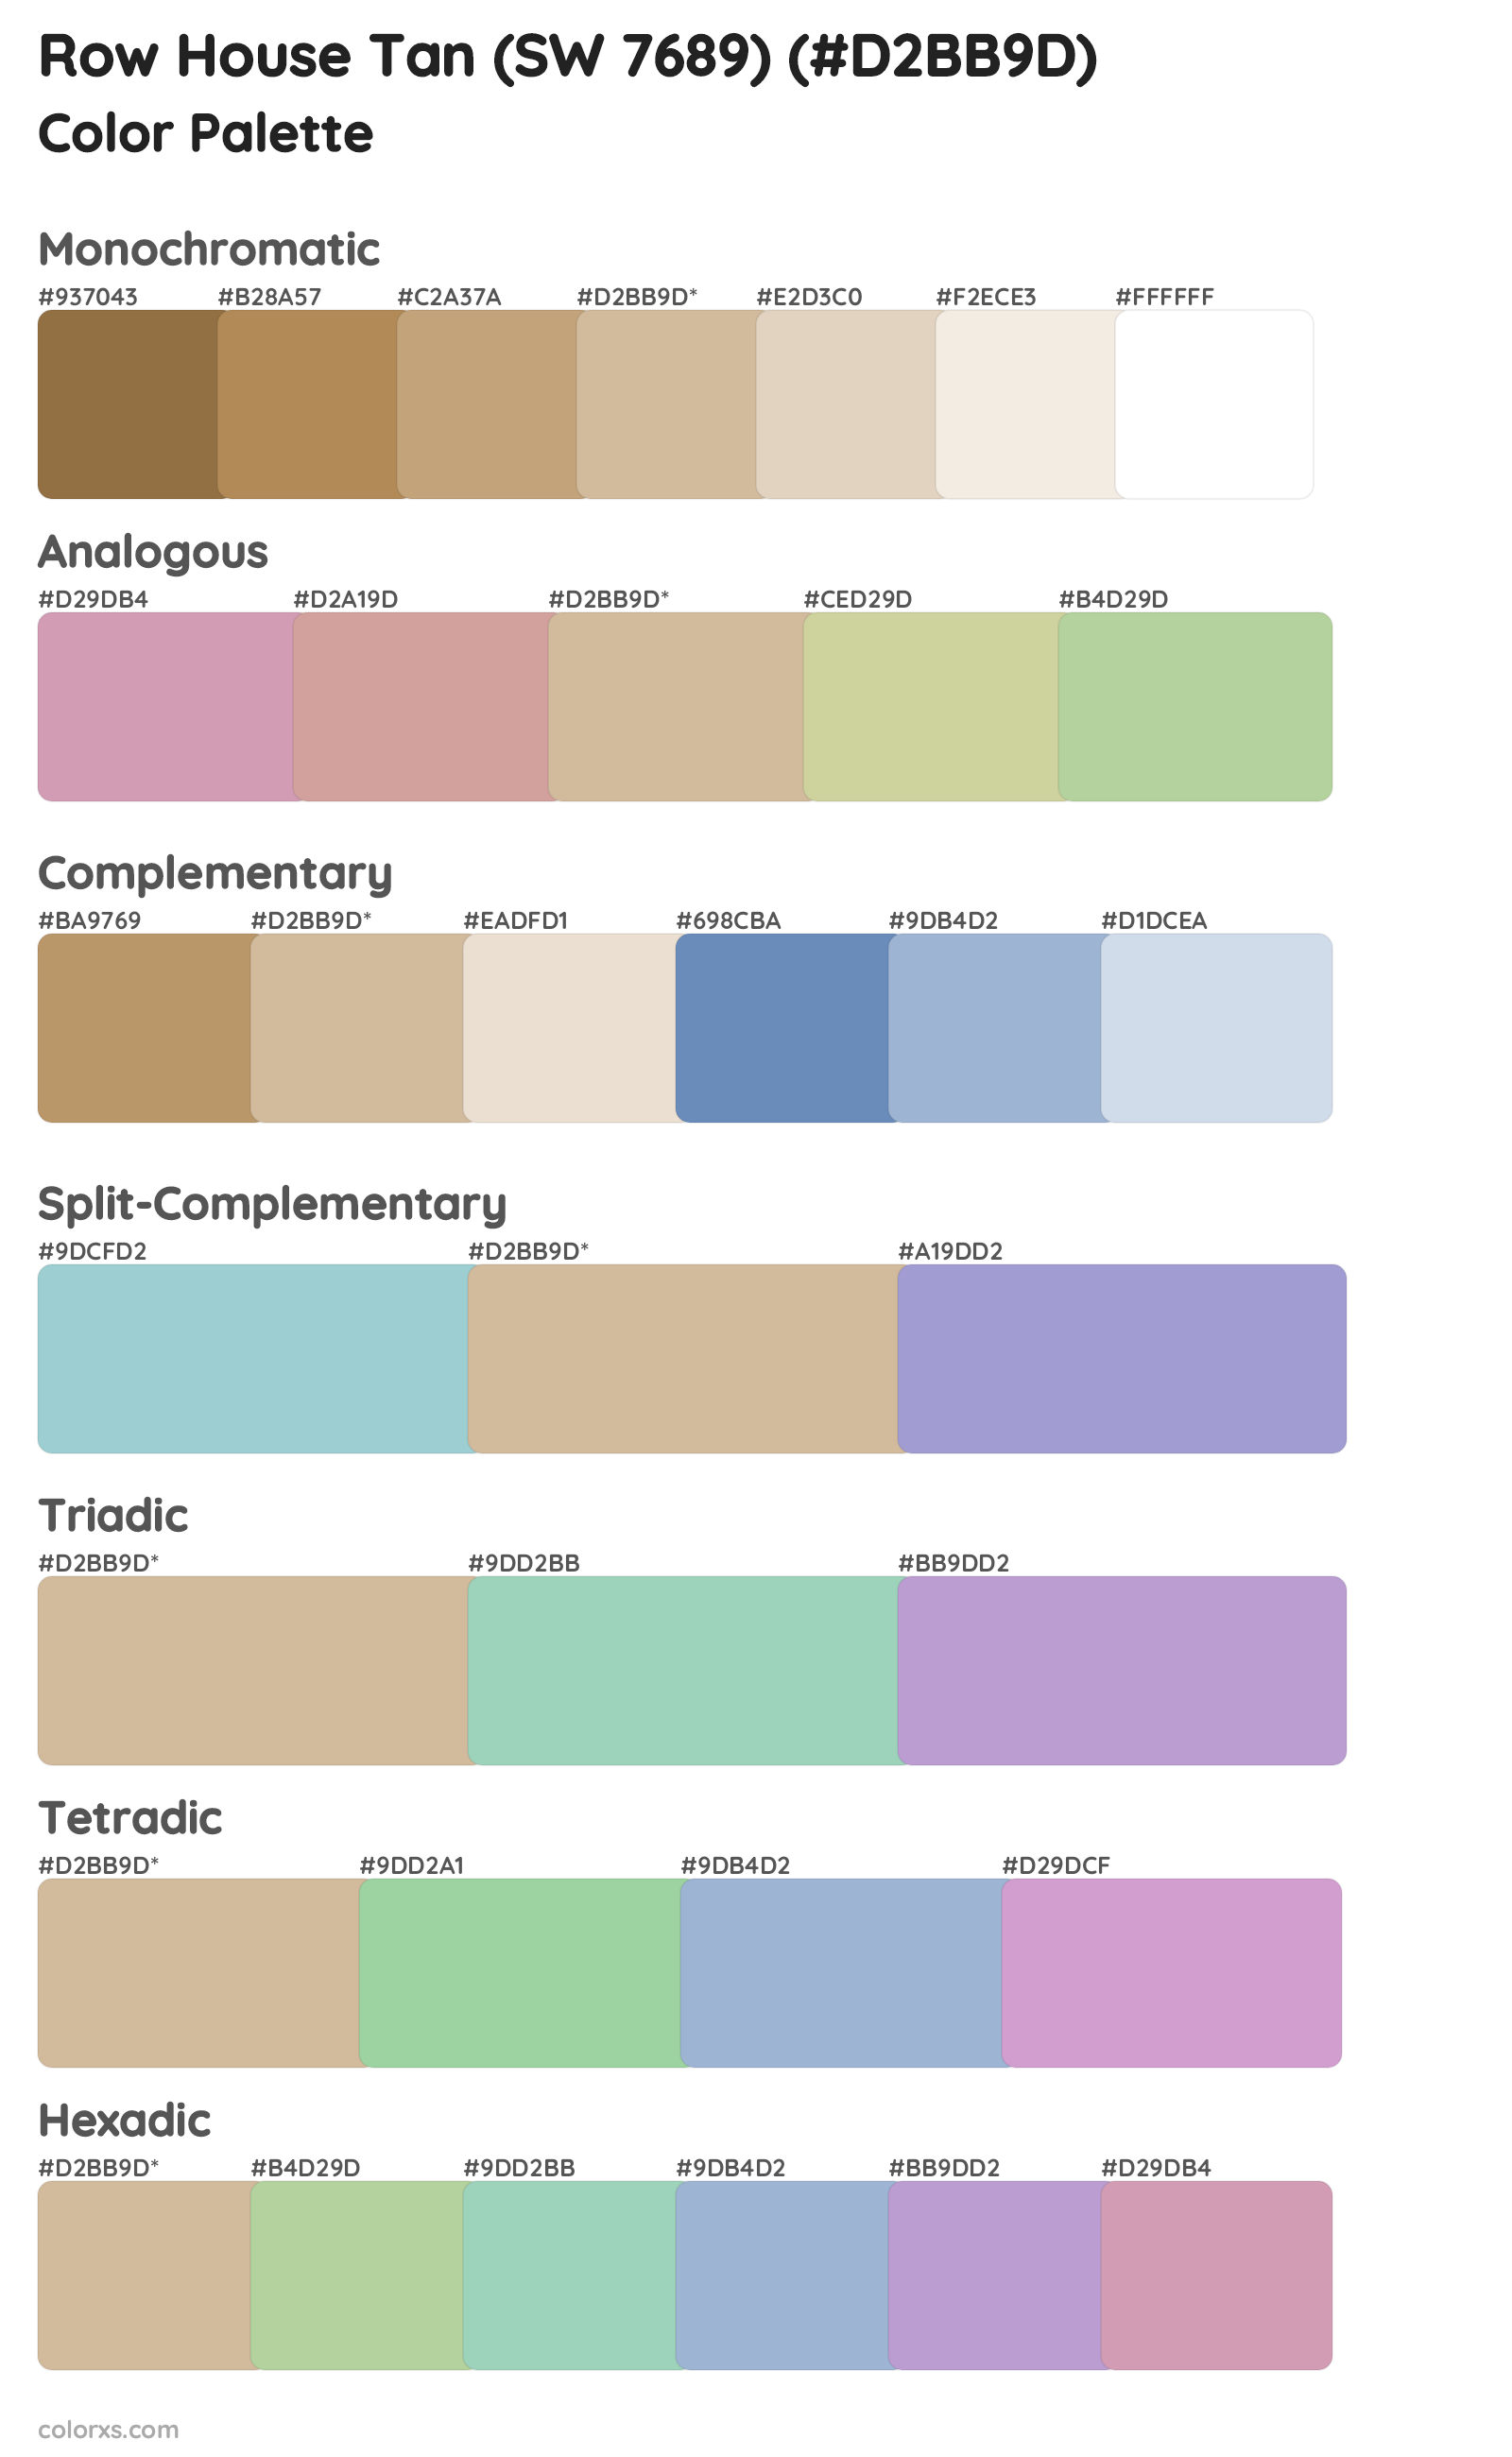 Row House Tan (SW 7689) Color Scheme Palettes